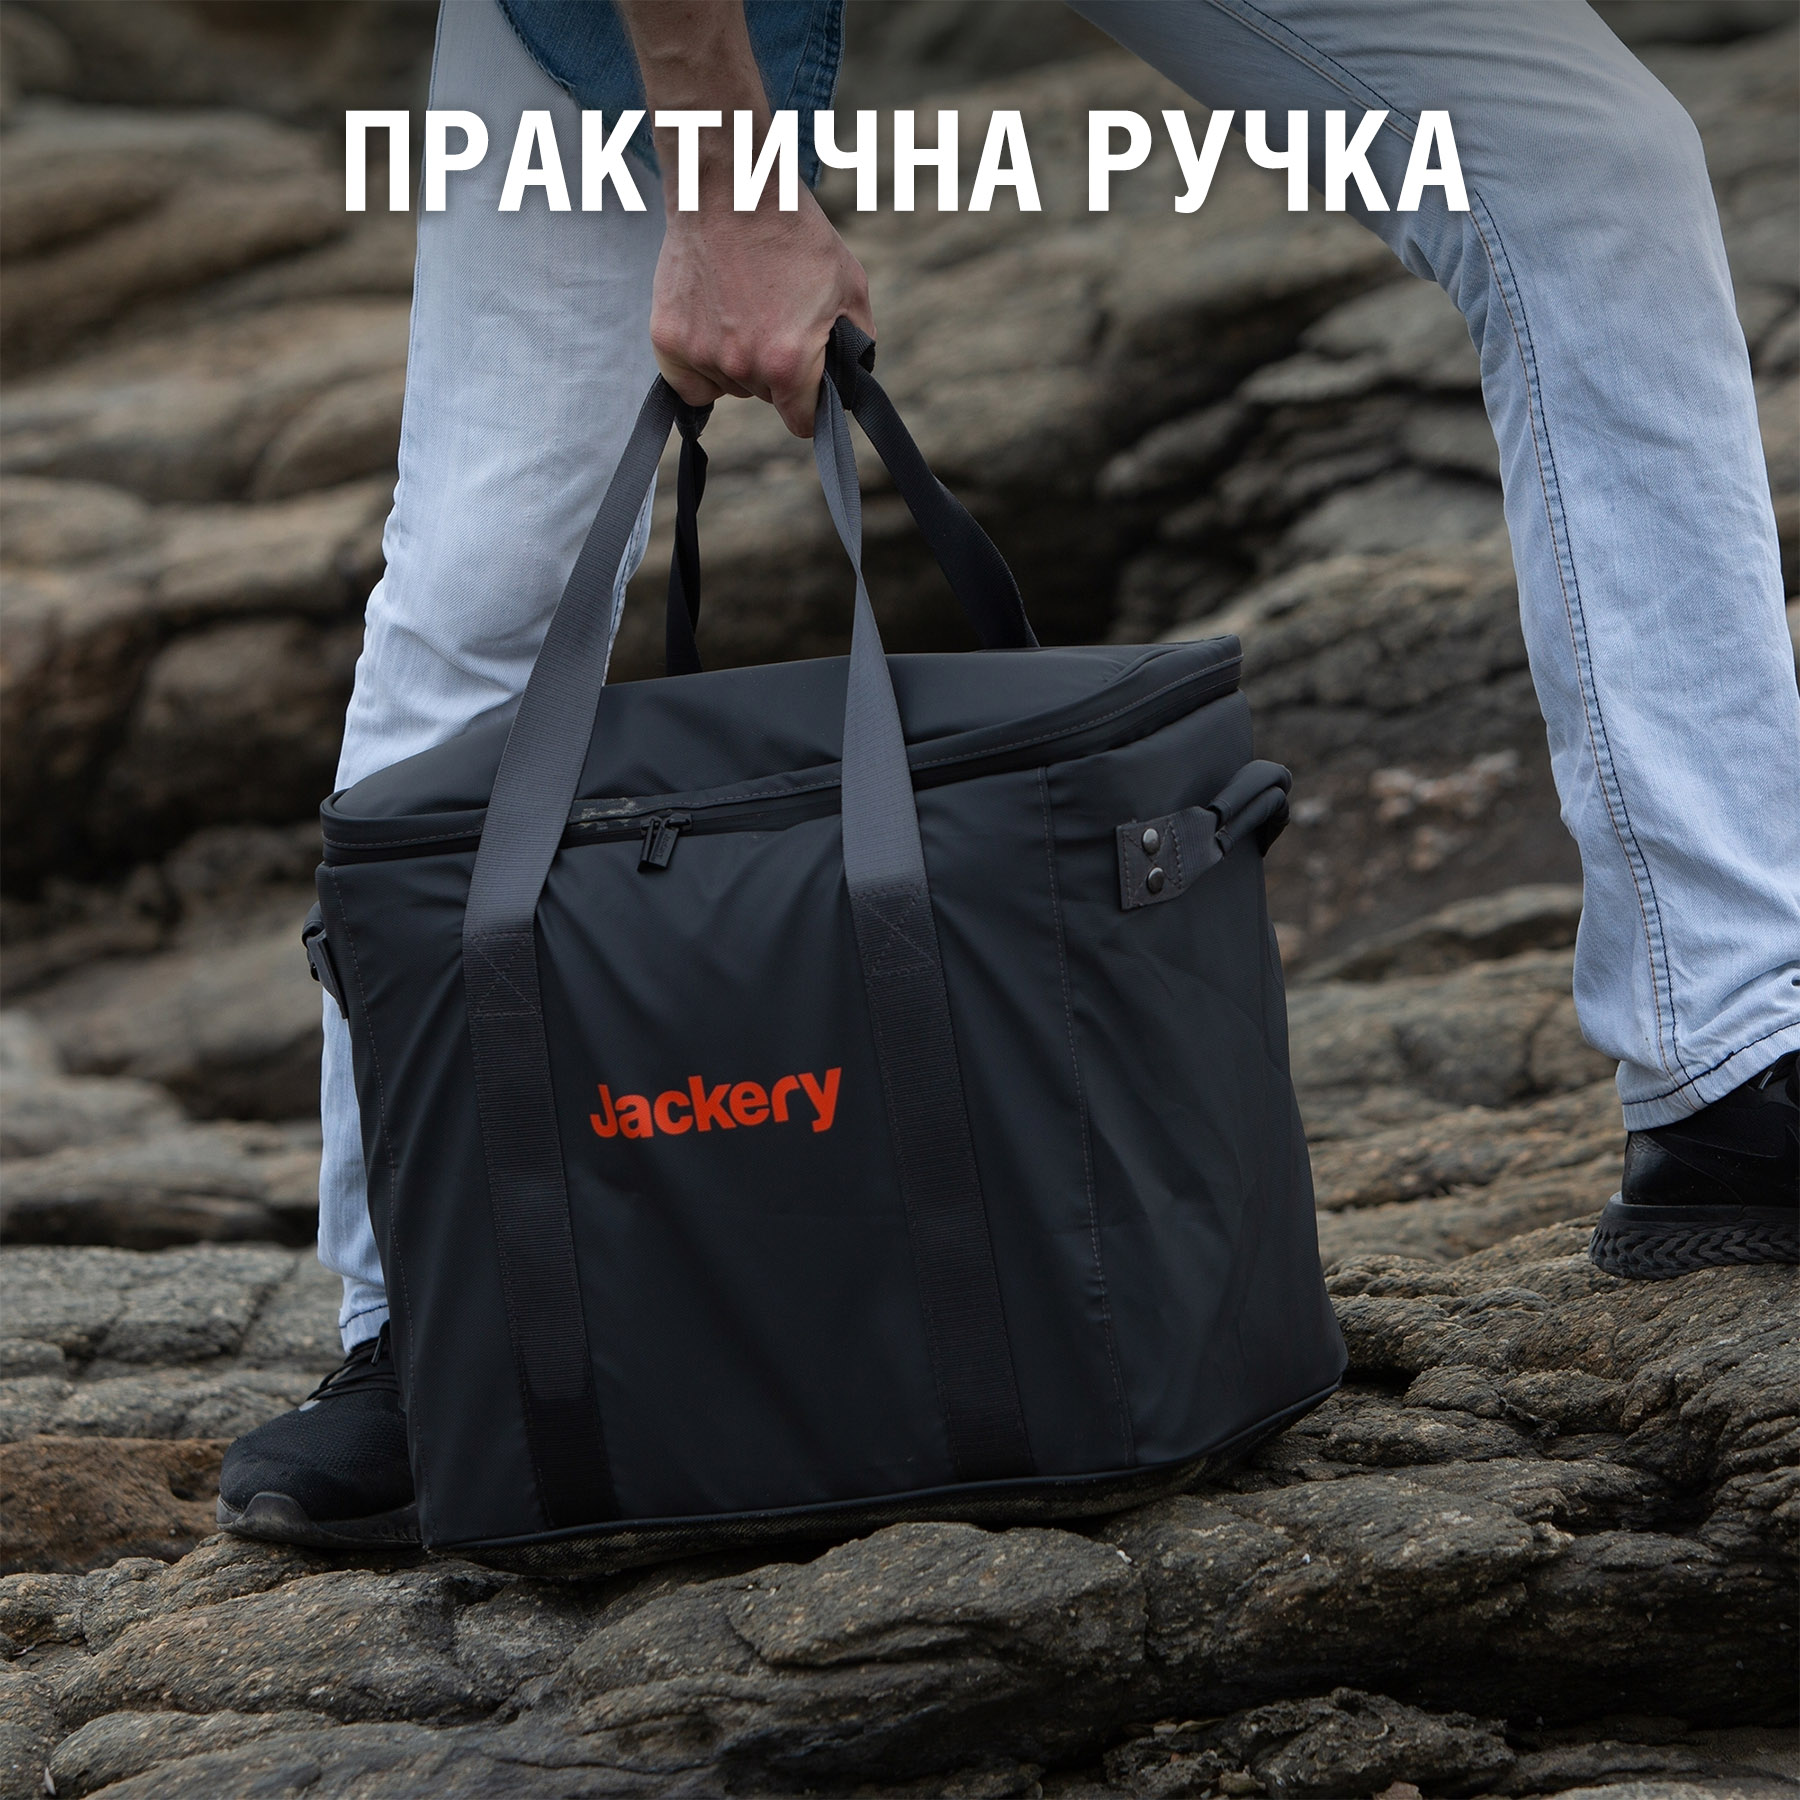 продаємо Jackery Explorer 2000 Pro Bag  в Україні - фото 4